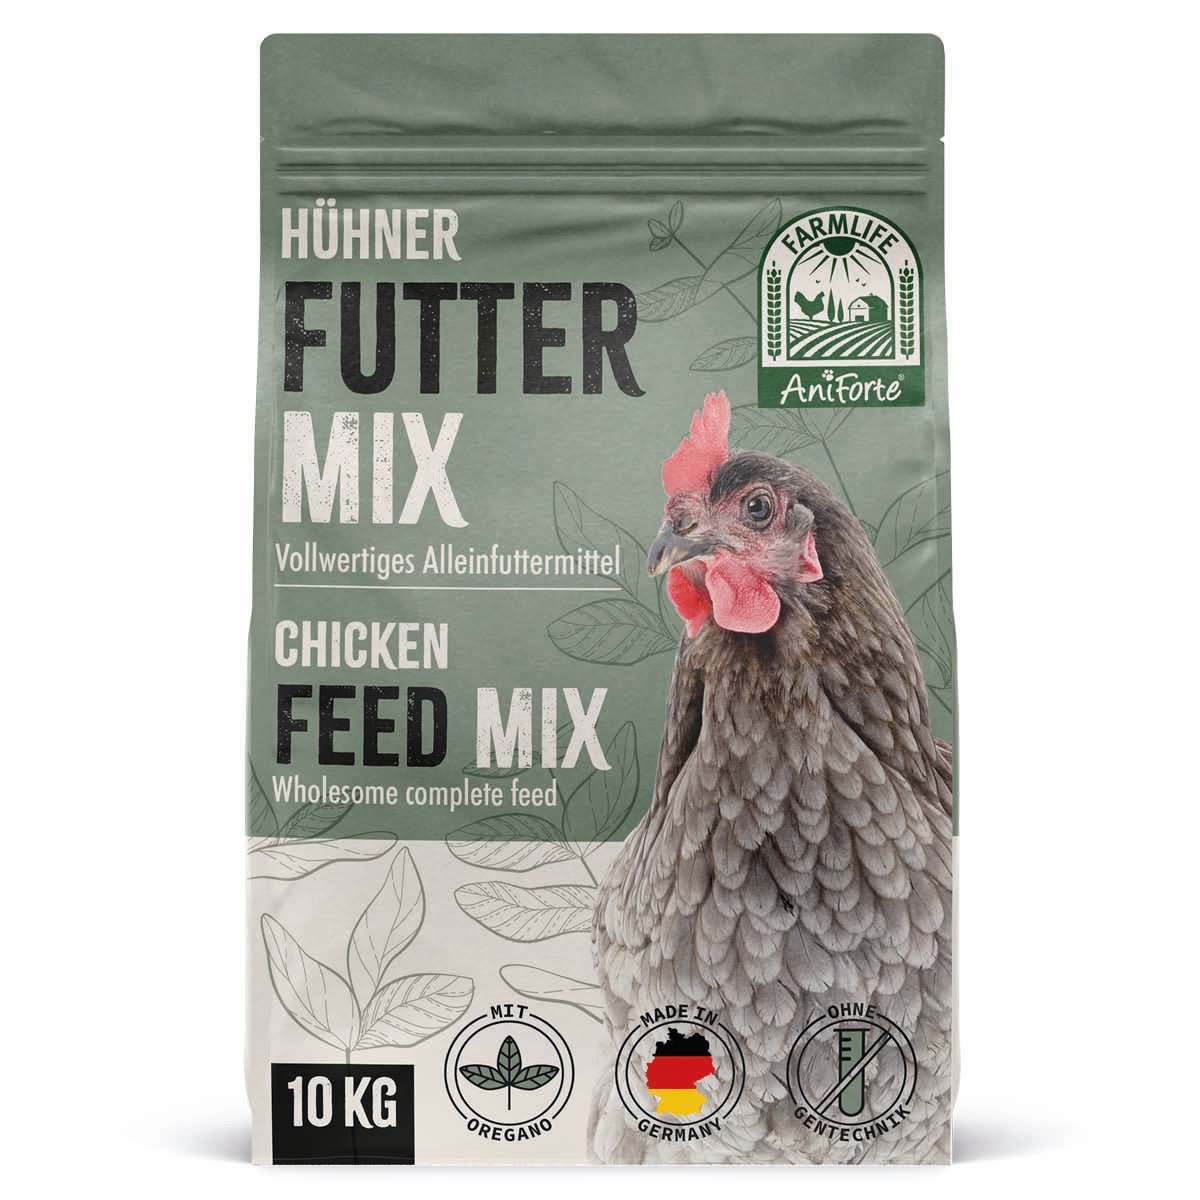 FarmLife Hühner Futter Mix mit Oregano von AniForte